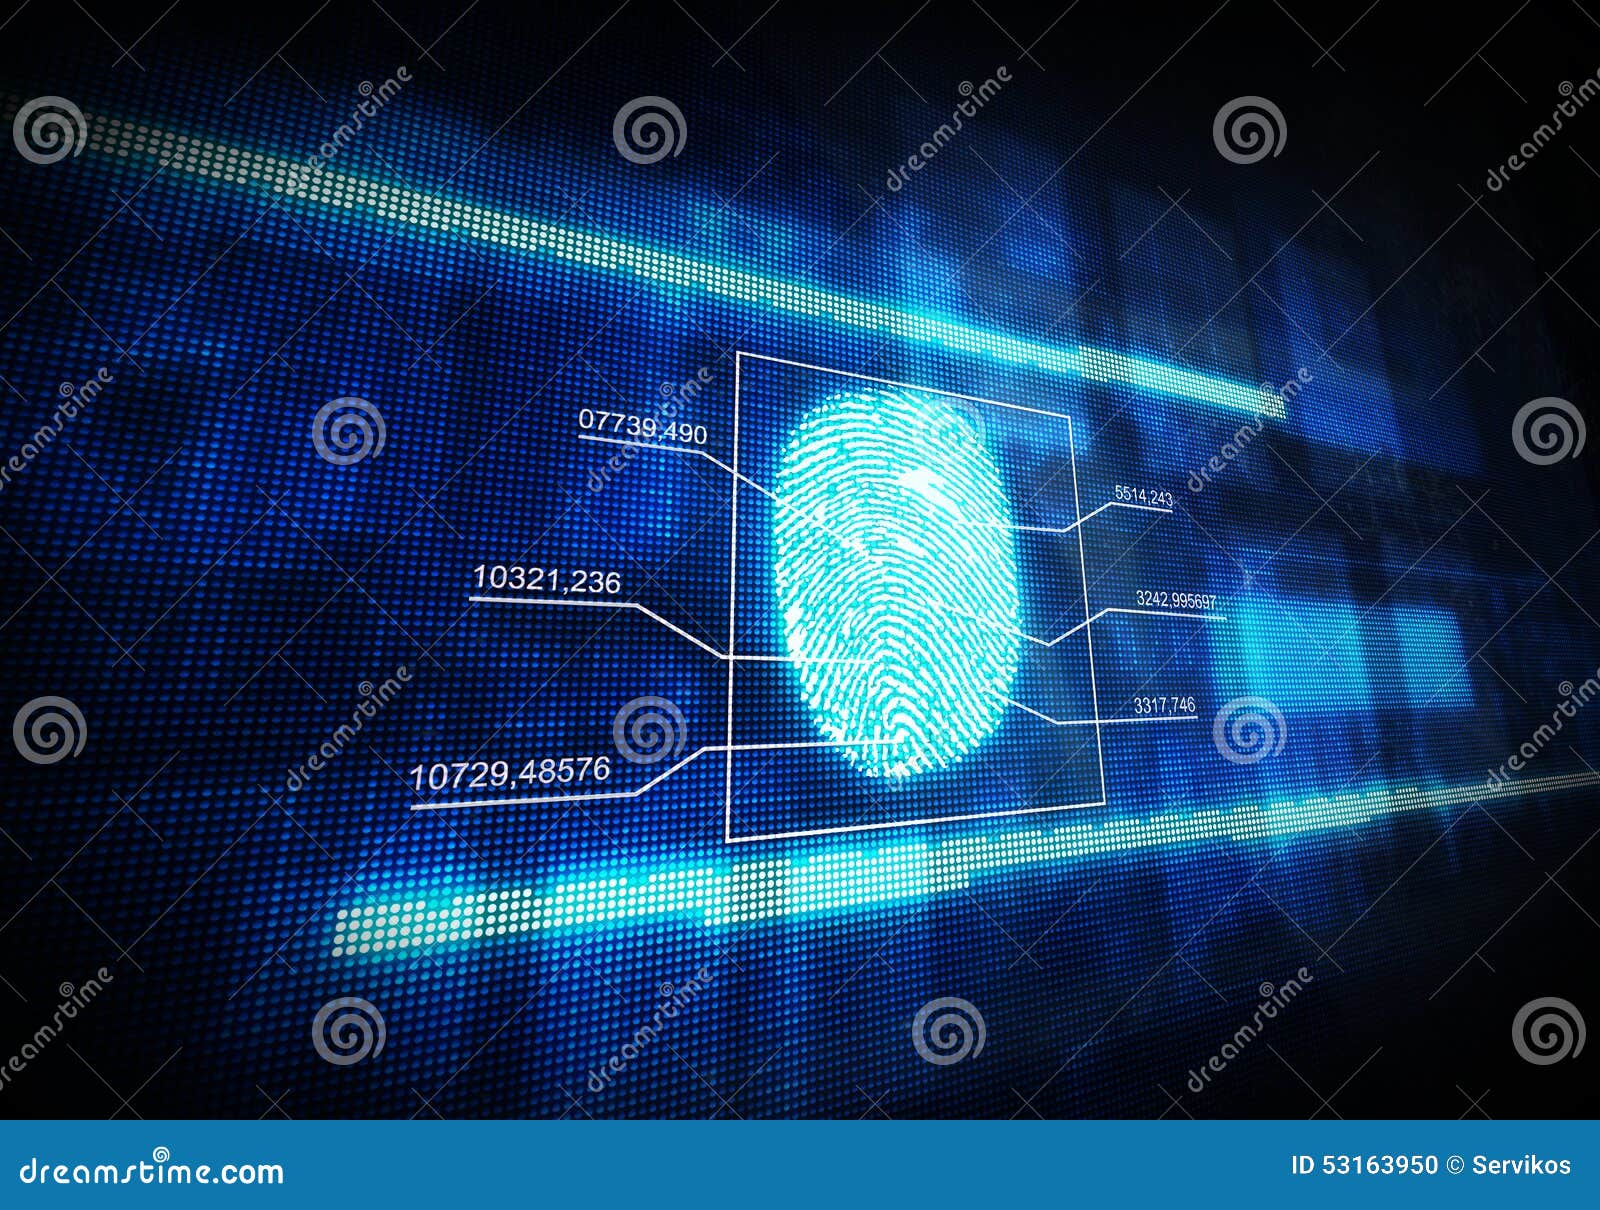 blue digital fingerprint.